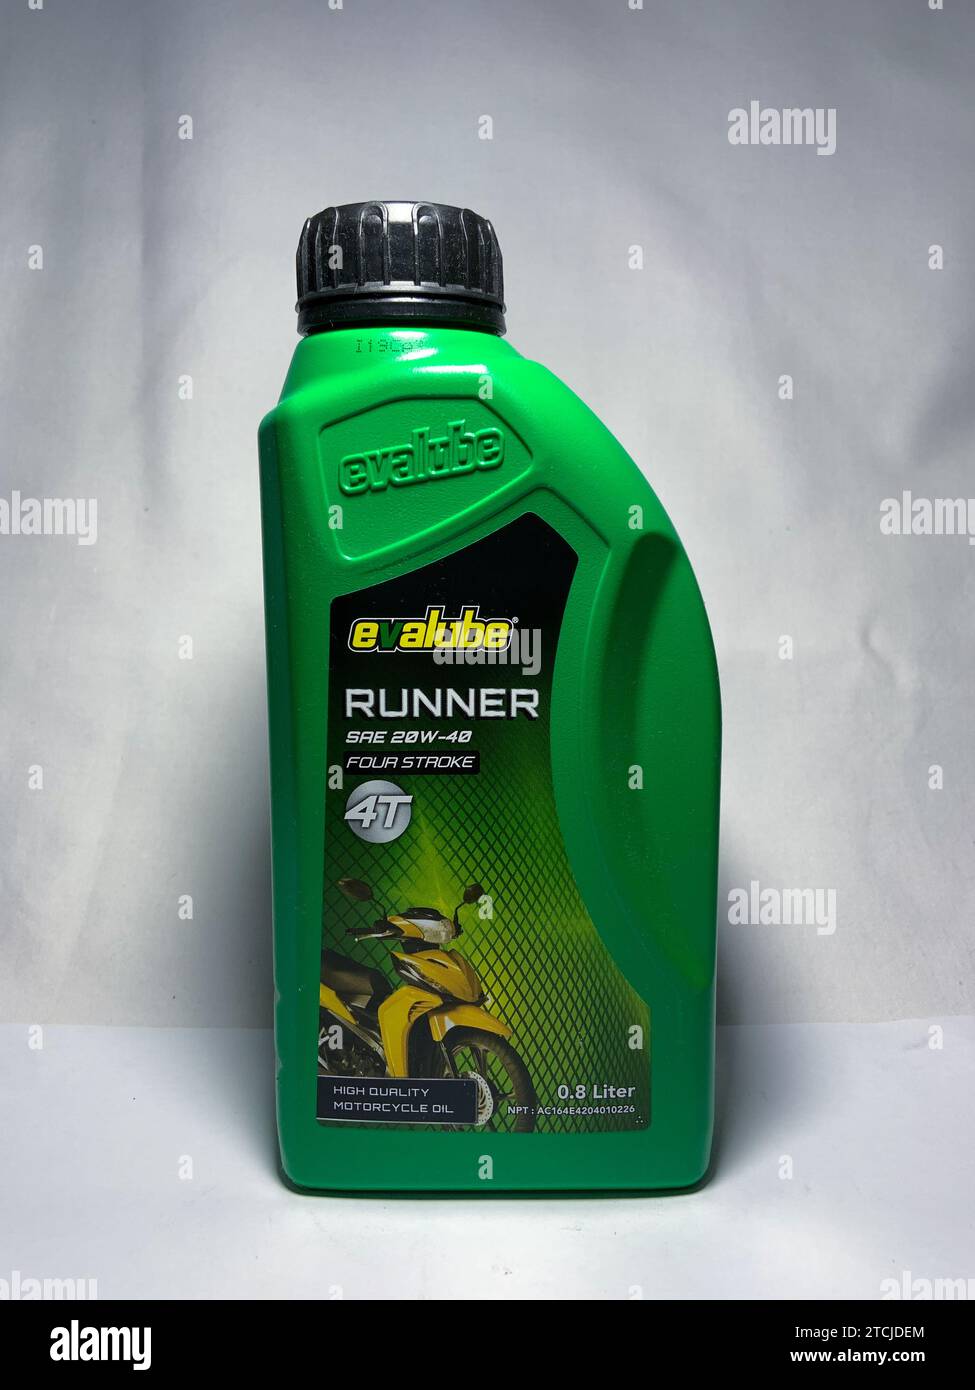 Surakarta, Indonesia - November 20, 2023 : Evalube Runner motor oil, high quality motorcycle oil four stroke 4T 800ml. Evalube green bottle packaging. Stock Photo